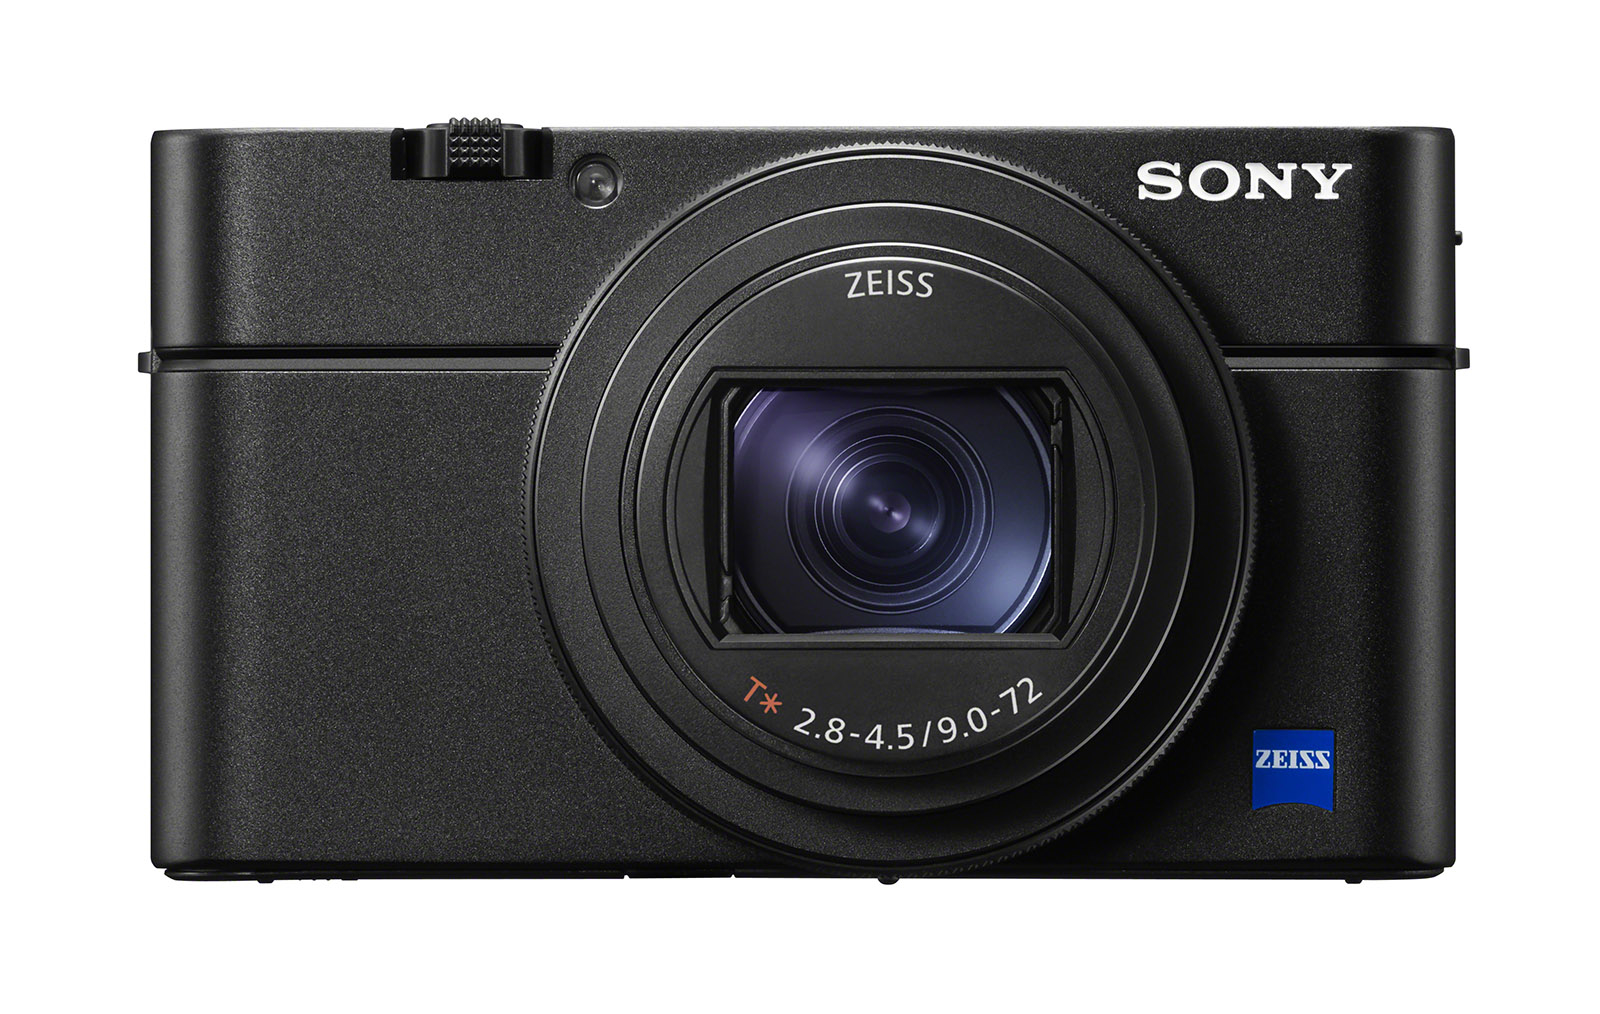 Sony ra mắt máy ảnh compact RX100 VI với chiếc ống kính zoom vô cùng lạ lùng